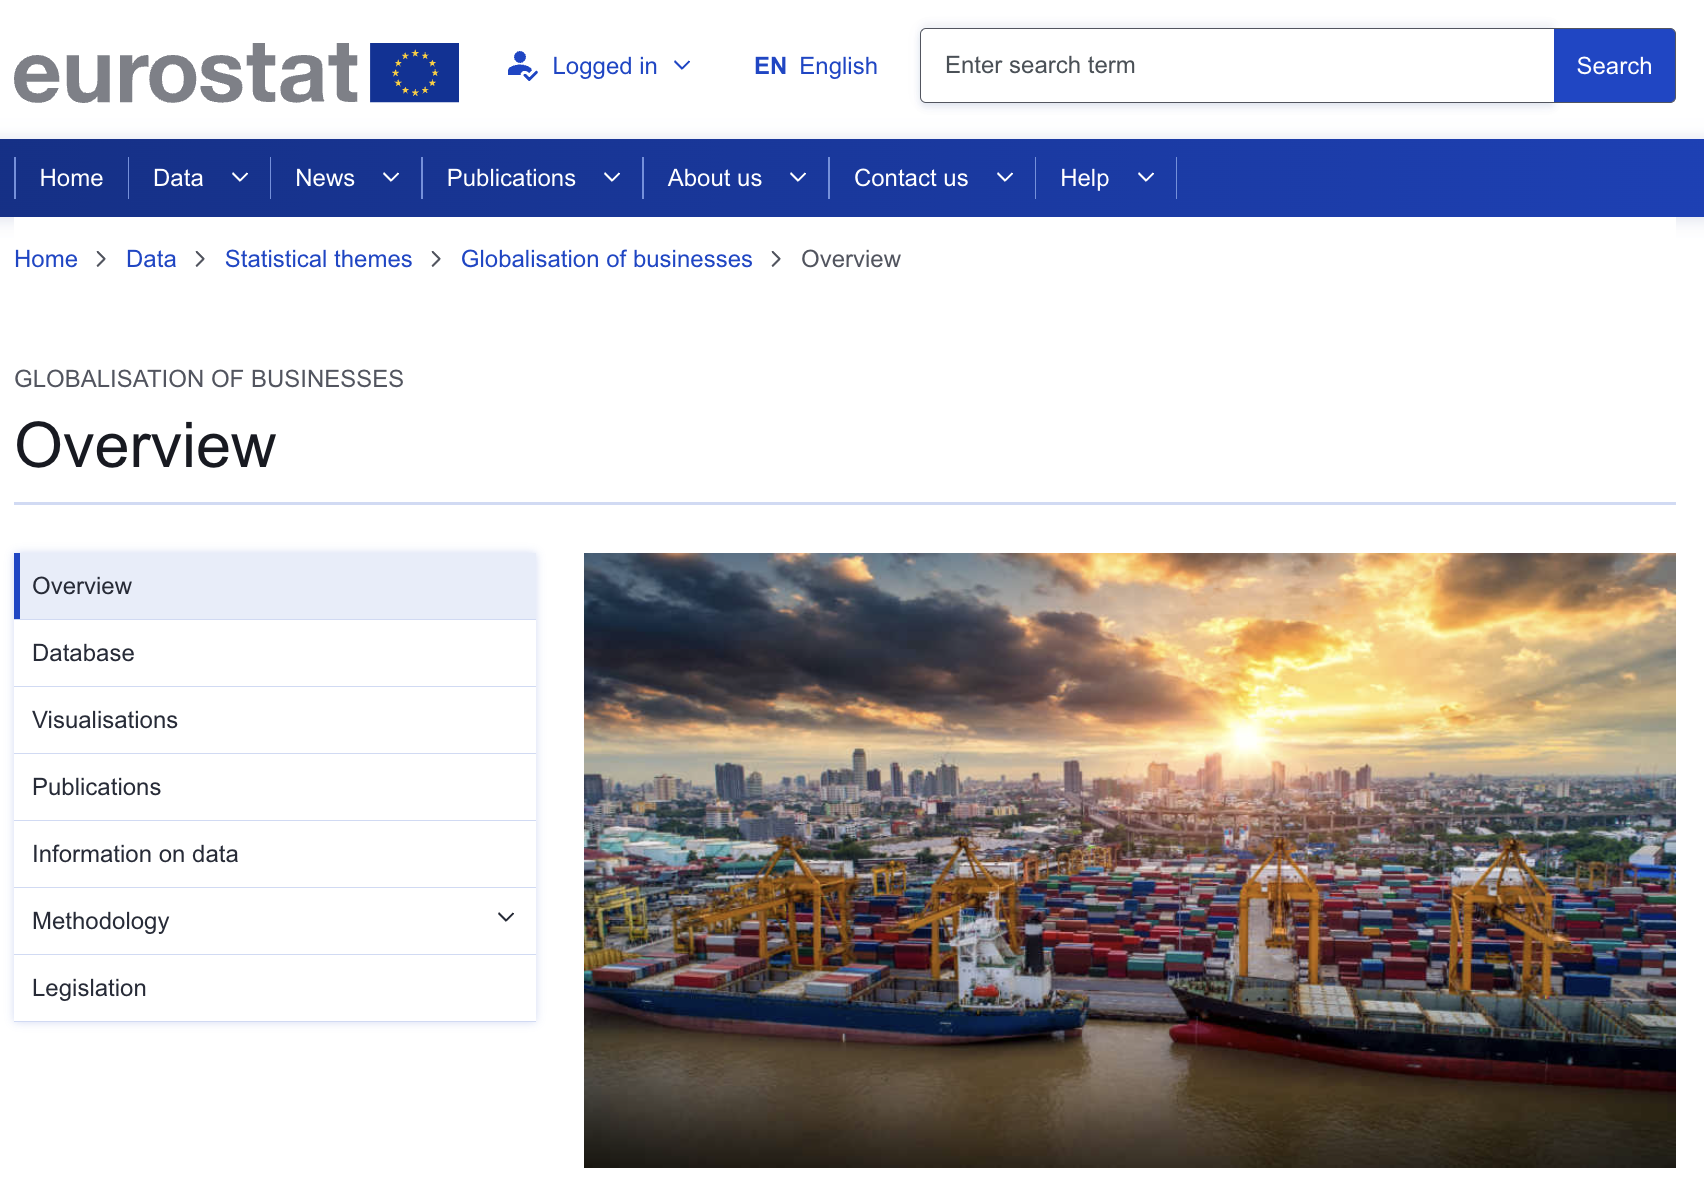 Στιγμιότυπο οθόνης της ιστοσελίδας της Eurostat για την οικονομική παγκοσμιοποίηση που σχετίζεται με τις επιχειρήσεις.  Η εικόνα δείχνει ένα εμπορικό λιμάνι το ηλιοβασίλεμα με εκατοντάδες κοντέινερ διαφορετικών χρωμάτων αποθηκευμένα σε οικόπεδο κοντά στο νερό, δίπλα σε φορτηγά πλοία.